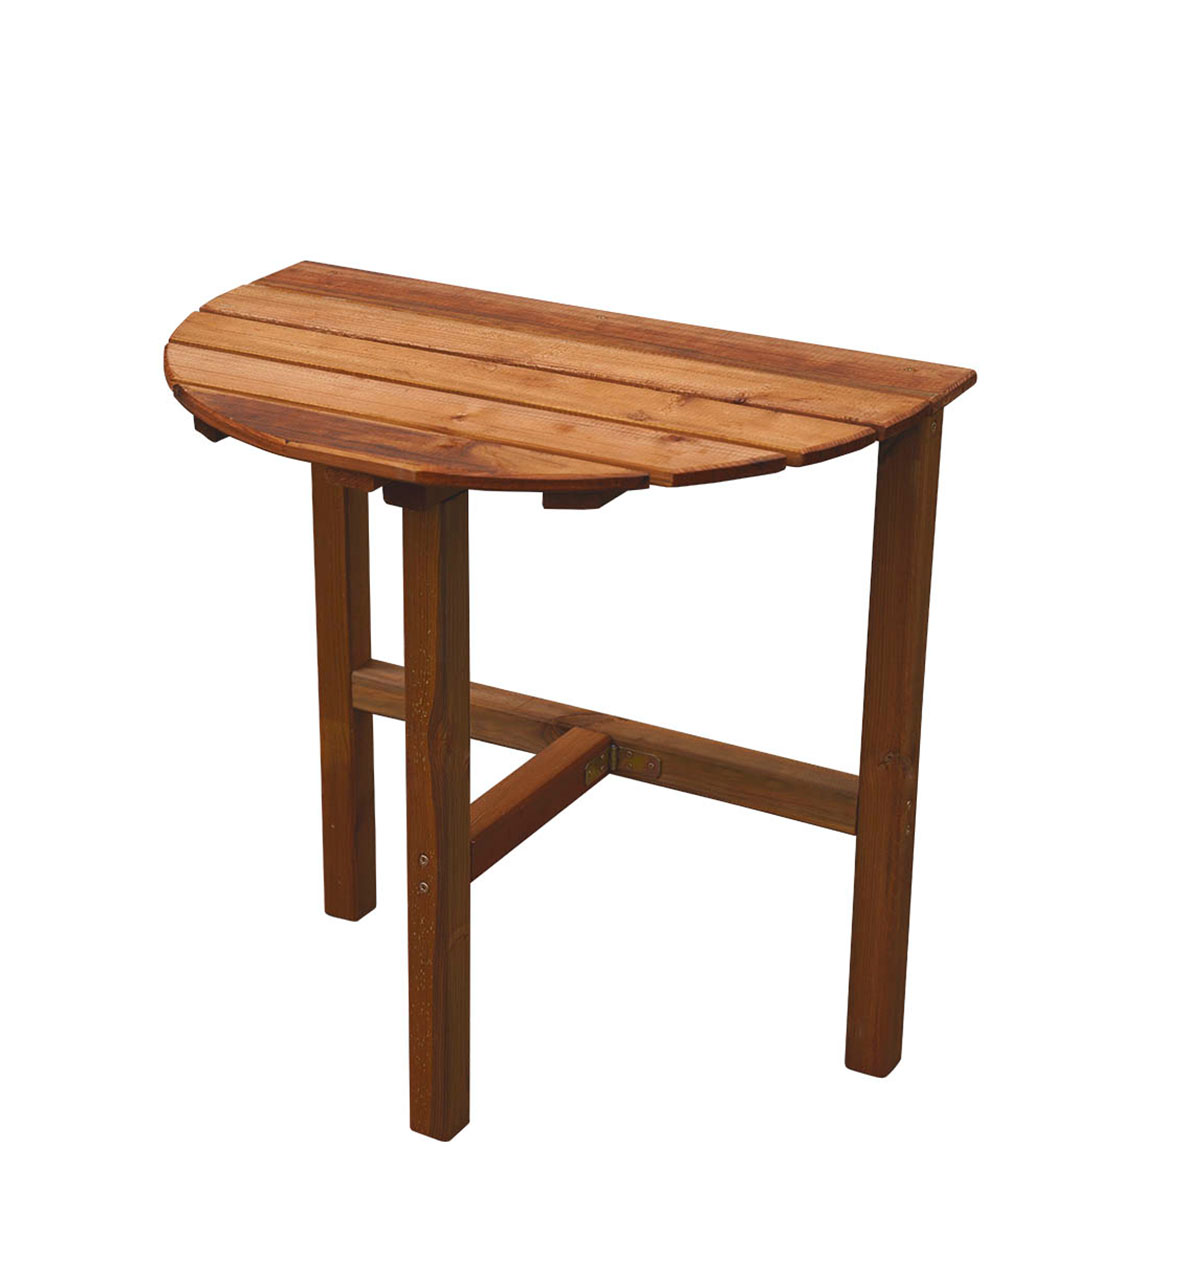 1pc Table Portable / Chaise Lune Table Pliante Convient - Temu Canada